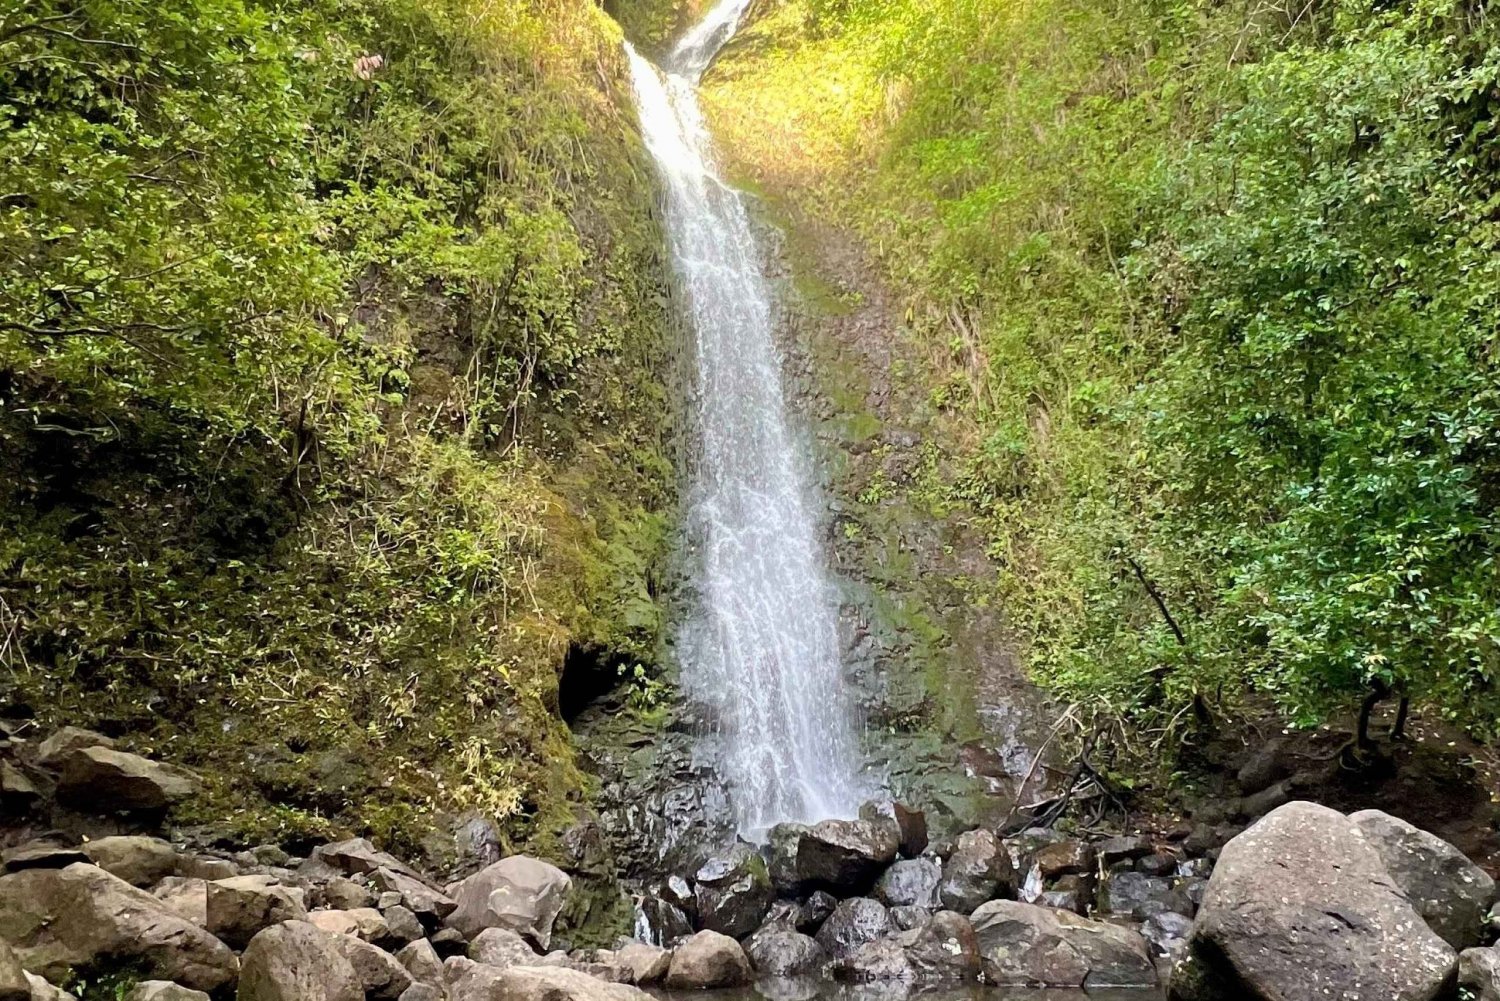 Caminata - Inmersión en la Cascada, Senderos de la Selva Tropical (Servicio de recogida)